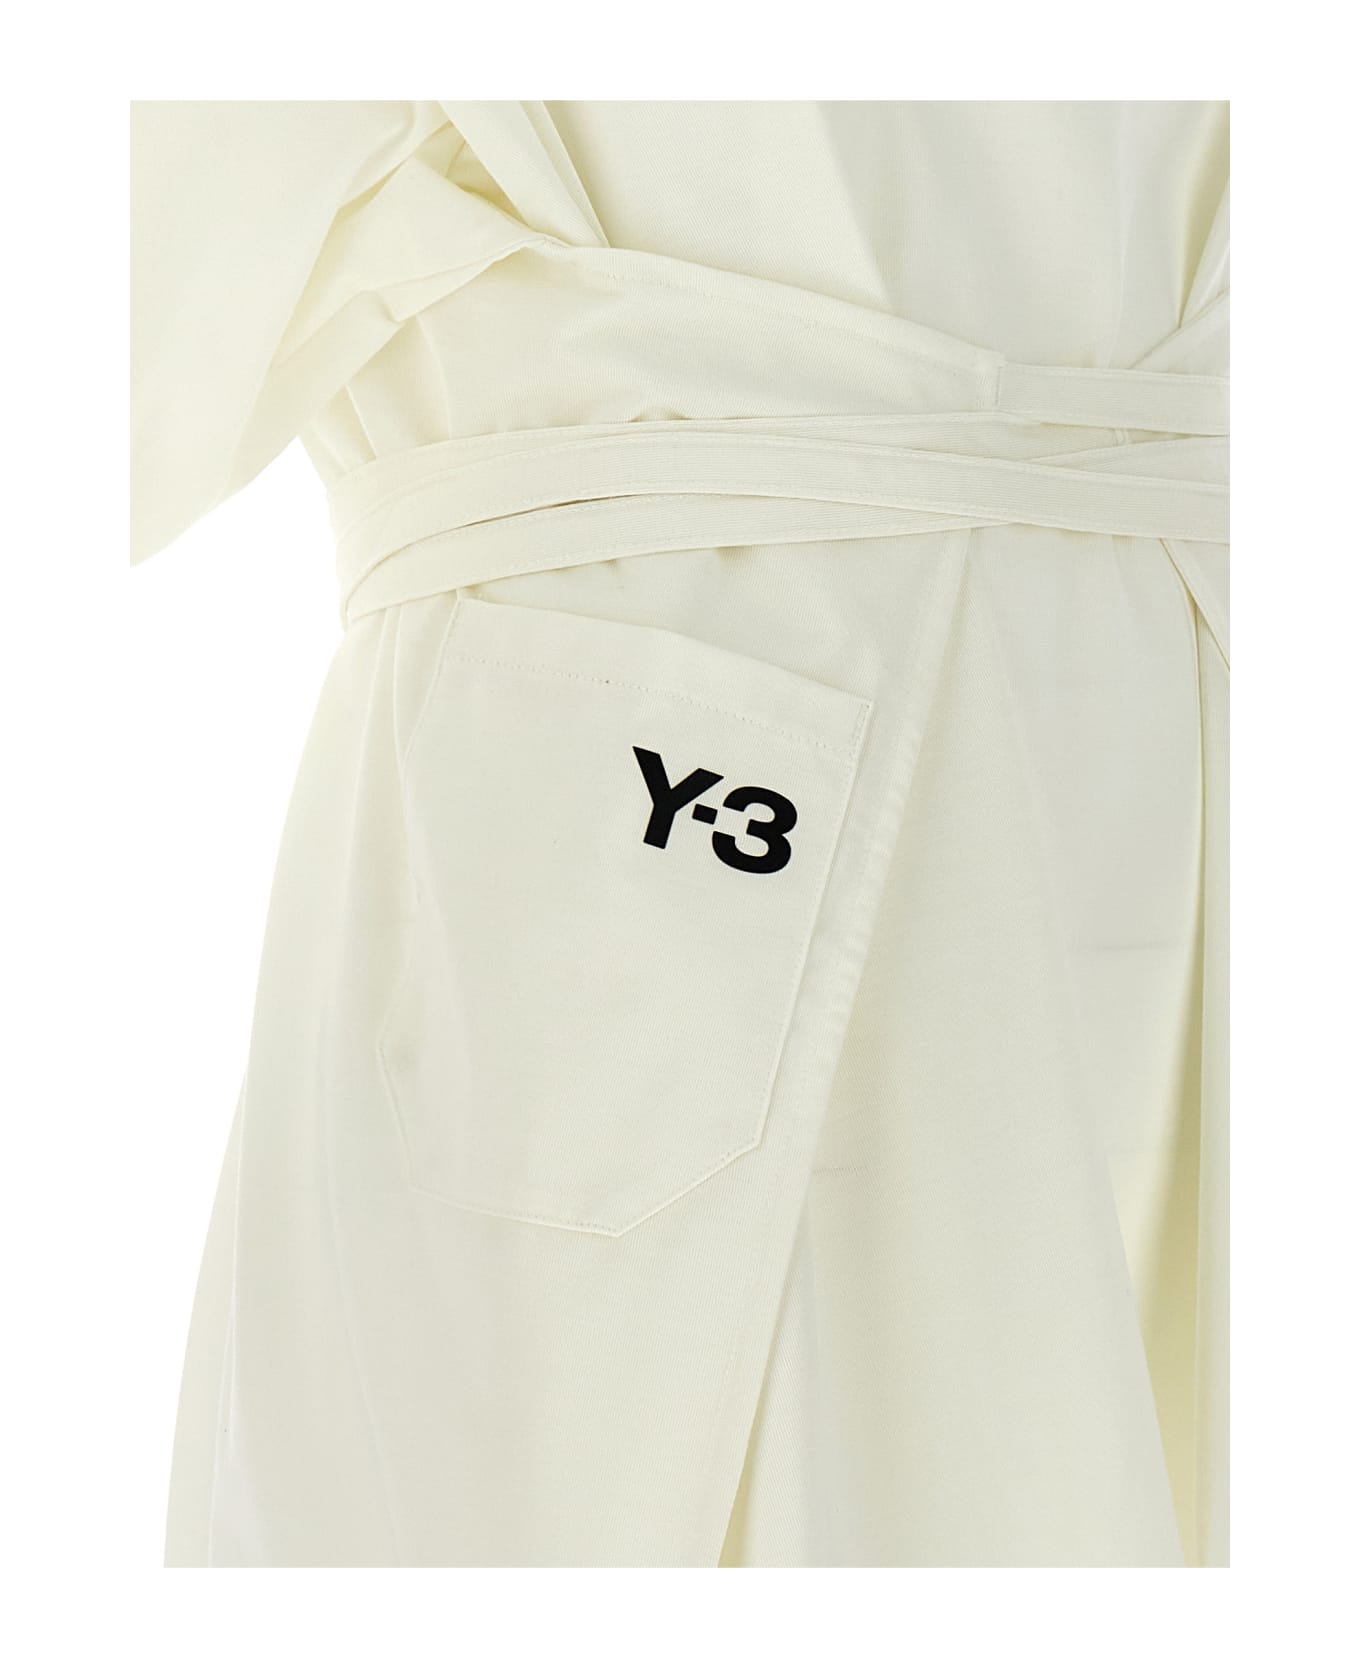 Y-3 'closure' T-shirt - White/Black